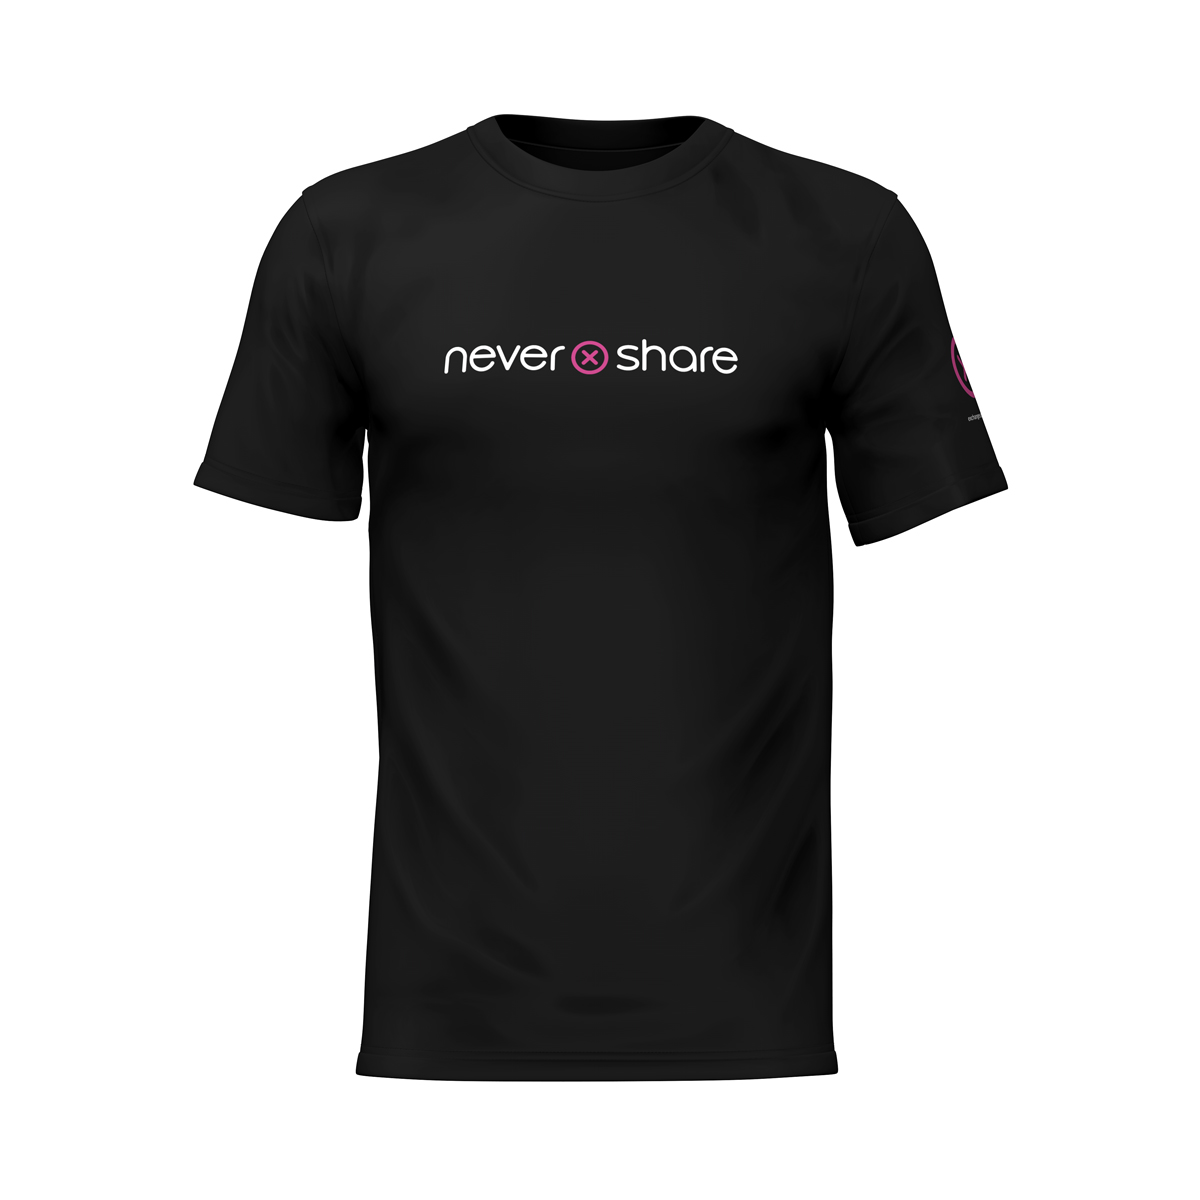 Nevershare T-shirt (medium)